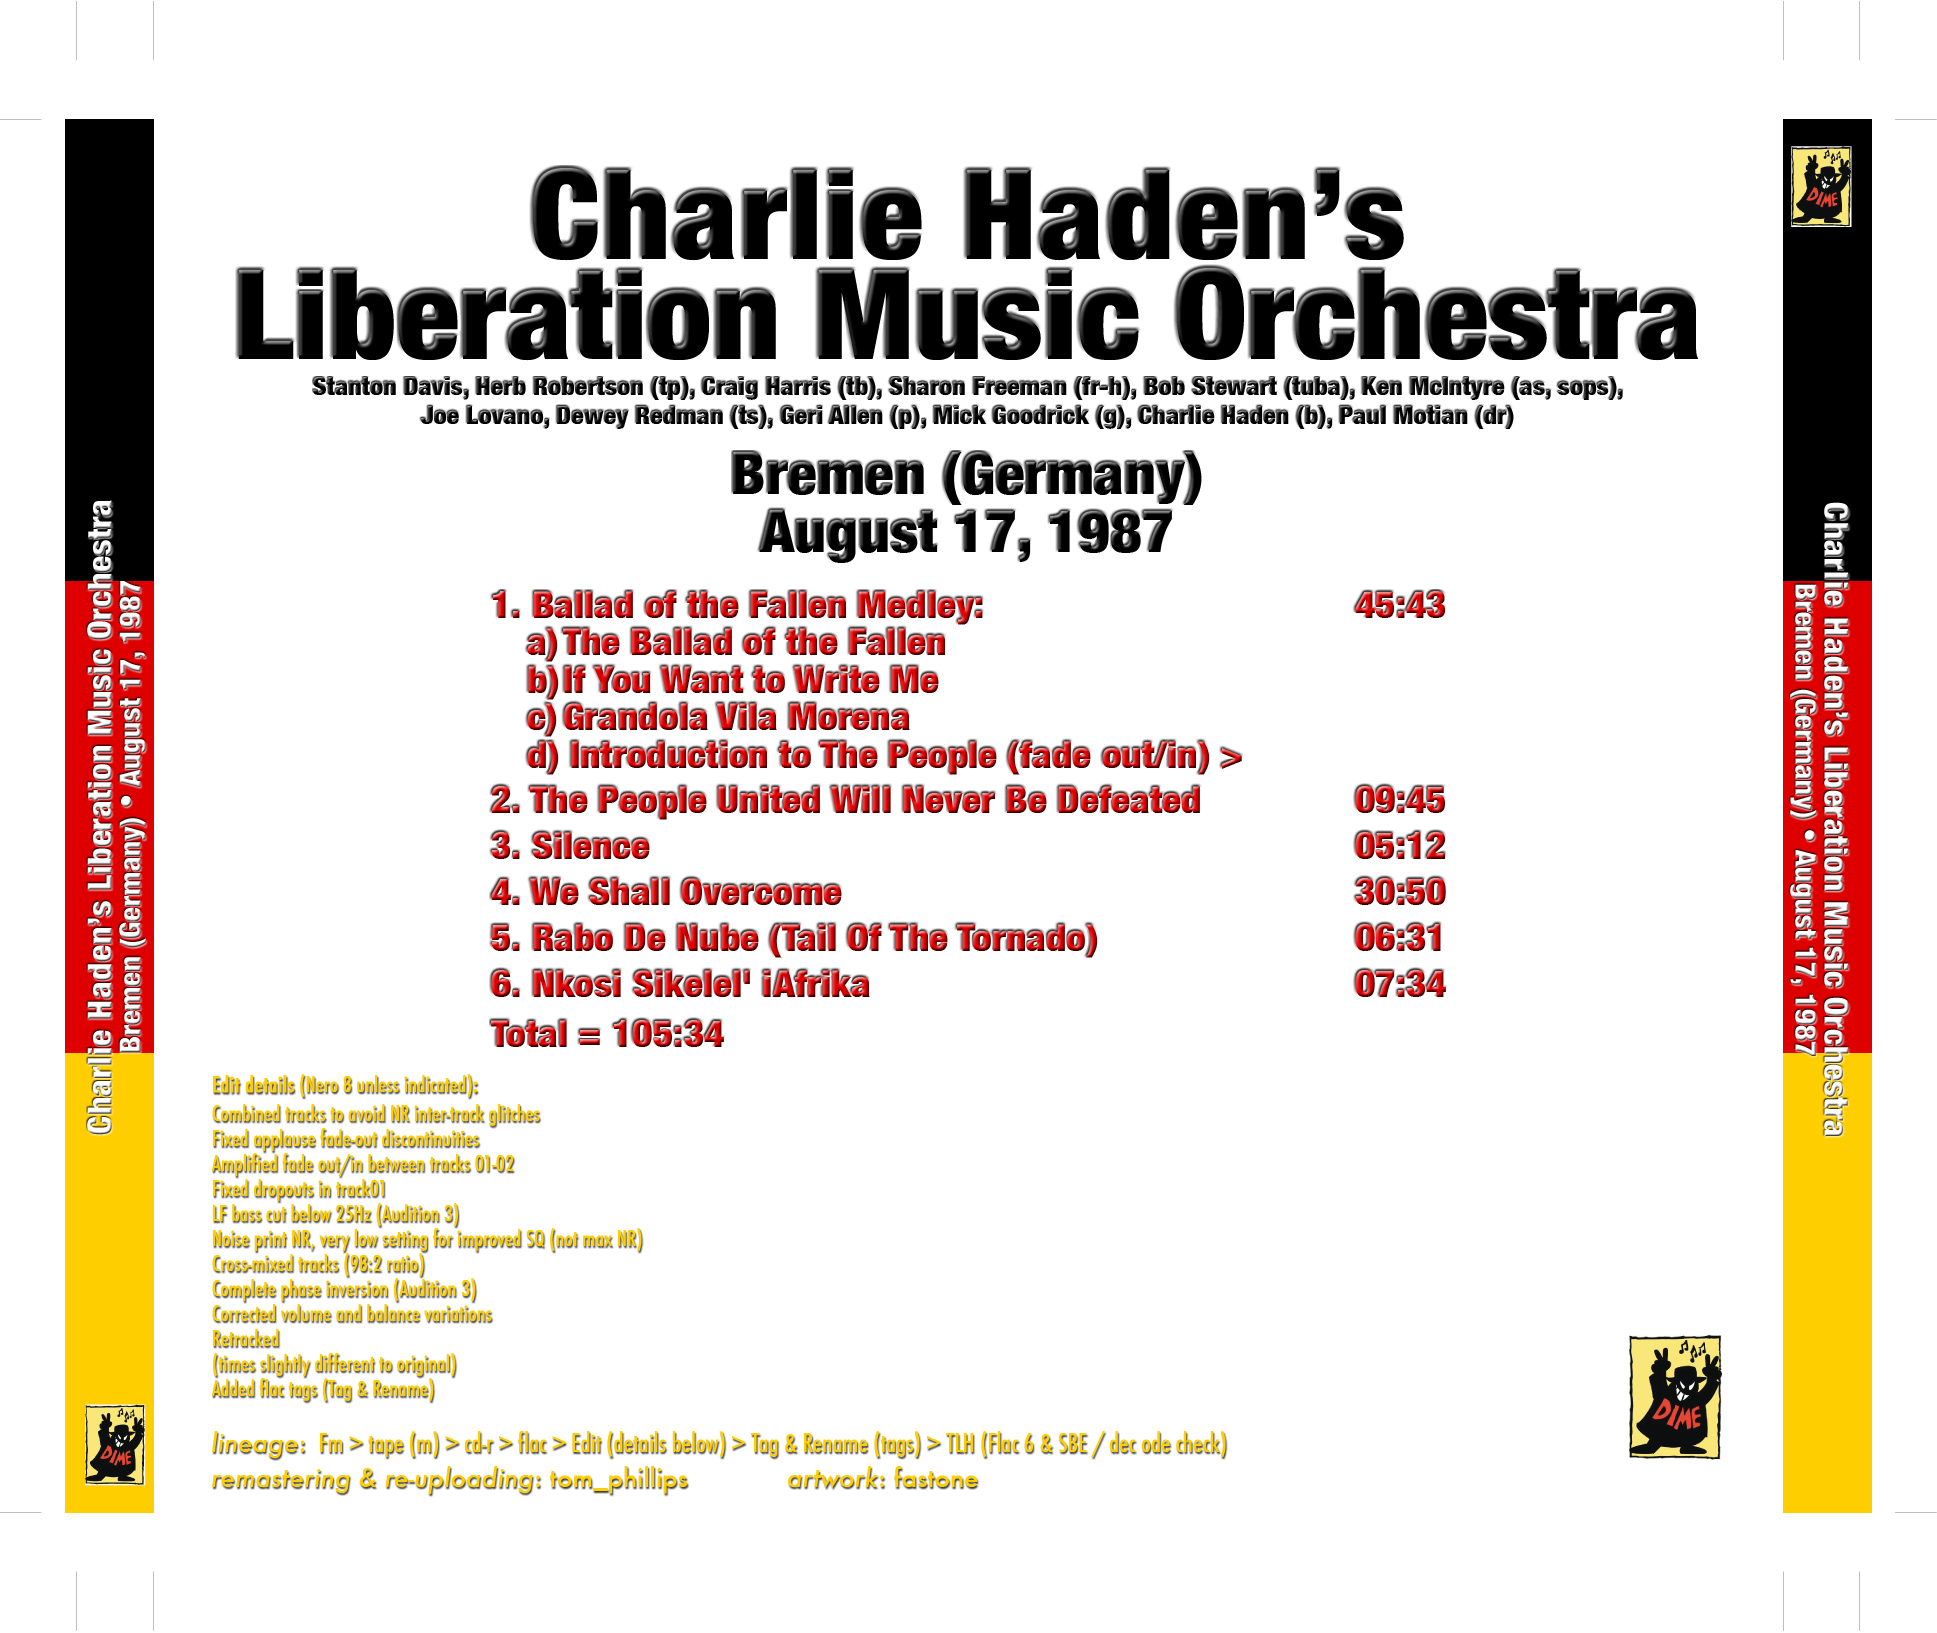 CharlieHadensLiberationMusicOrchestra1987-08-17BremenGermany (2).jpg